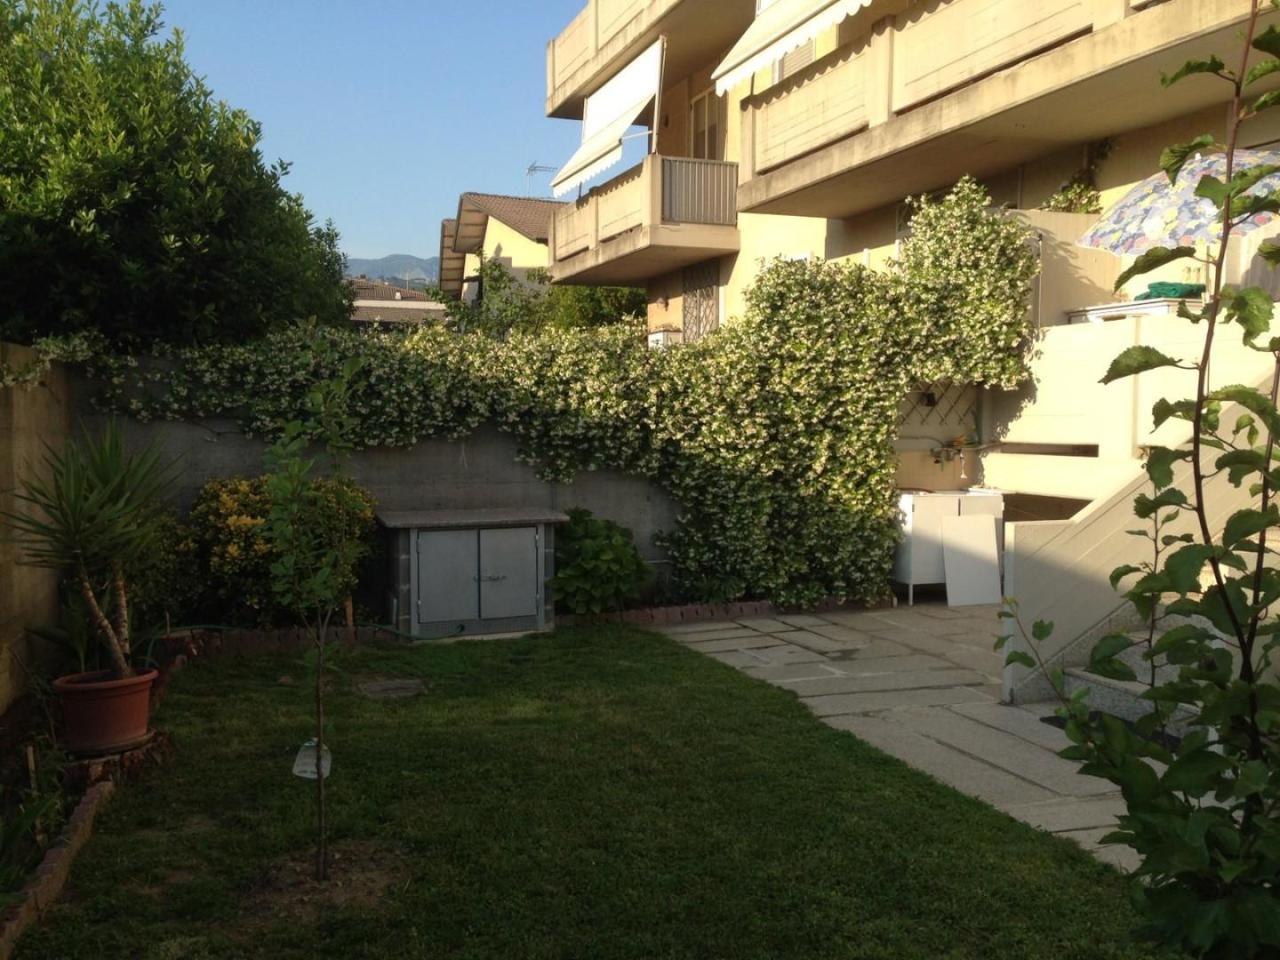 Appartamento in vendita a Carrara, 4 locali, prezzo € 235.000 | PortaleAgenzieImmobiliari.it